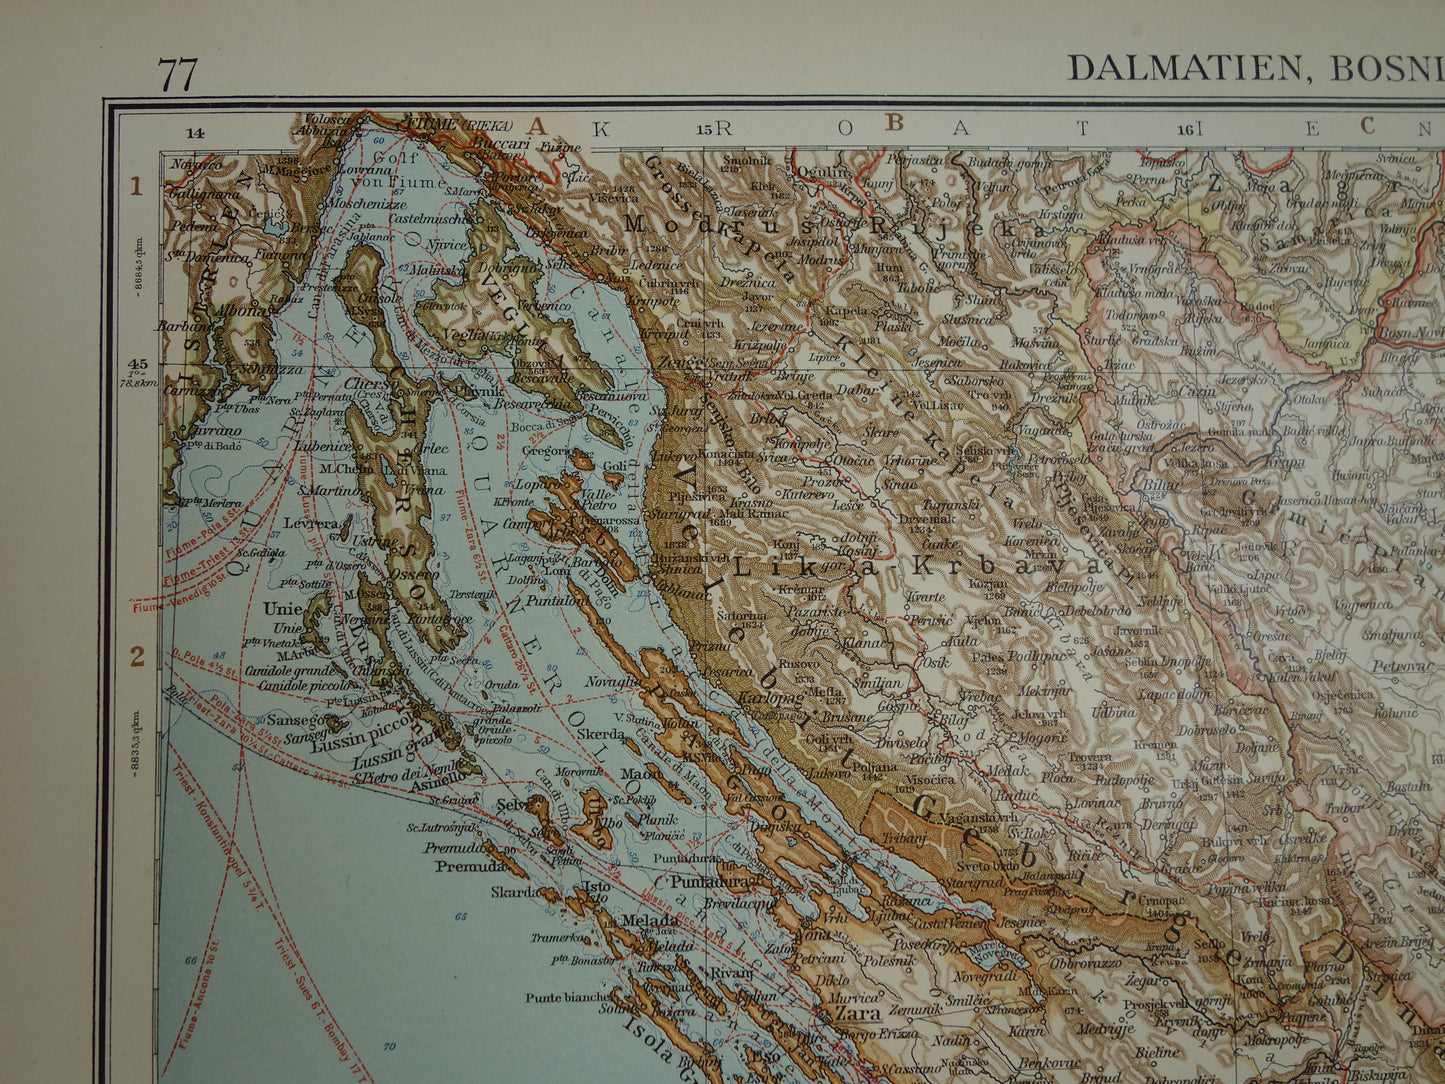 Oude kaart van Bosnië en Herzegovina Kroatië en Montenegro - Gedetailleerde grote landkaart met jaartal 1909 - Originele vintage kaarten